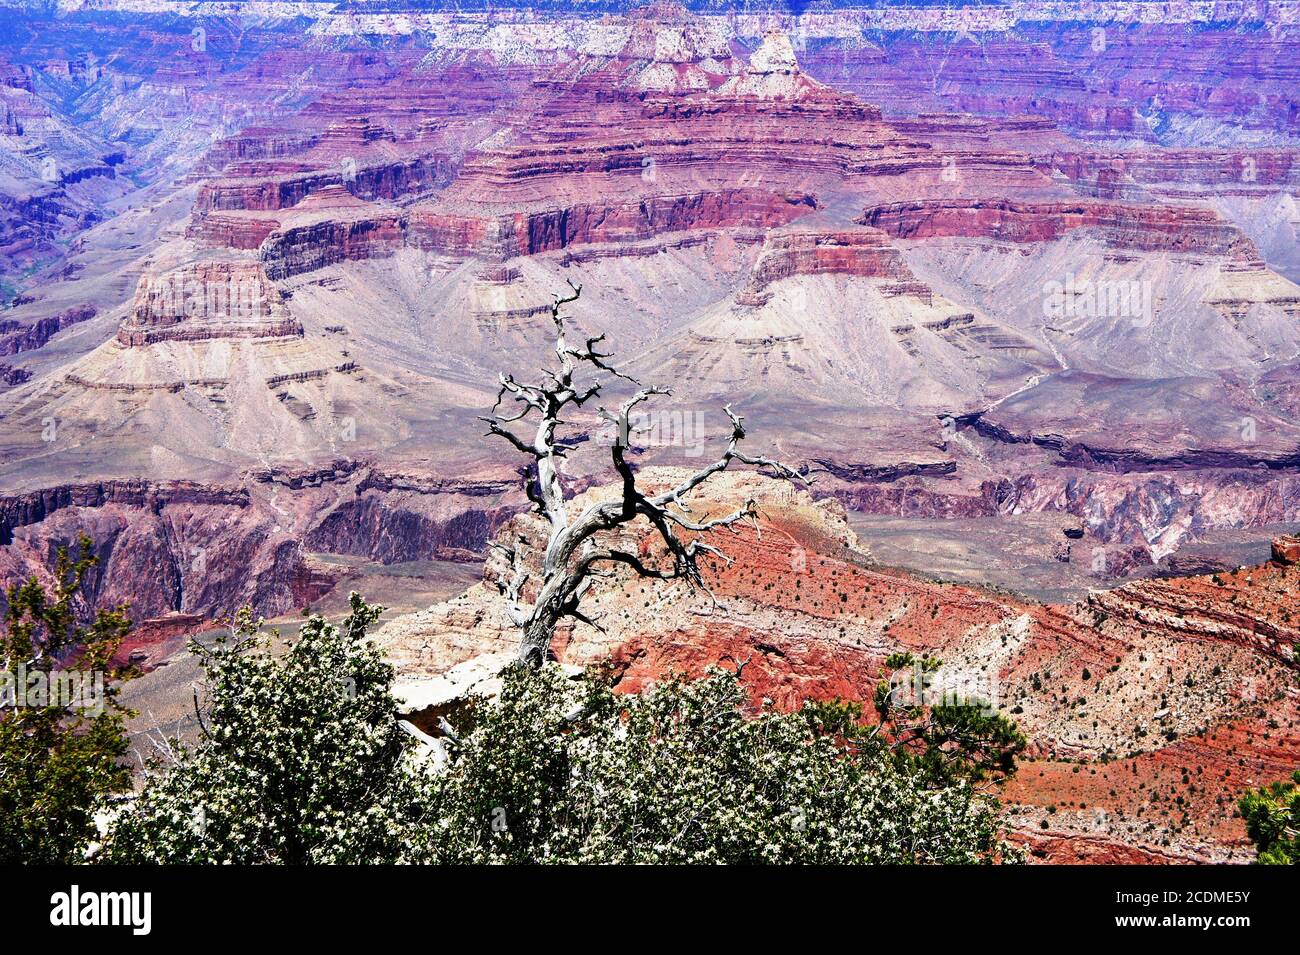 Grand Canyon National Park, Arizona, USA. Unheimlich helle Farben der Landschaft. Tolles Naturdenkmal. Atemberaubende Aussicht auf den Südrand. Geologisches Wunder. Stockfoto